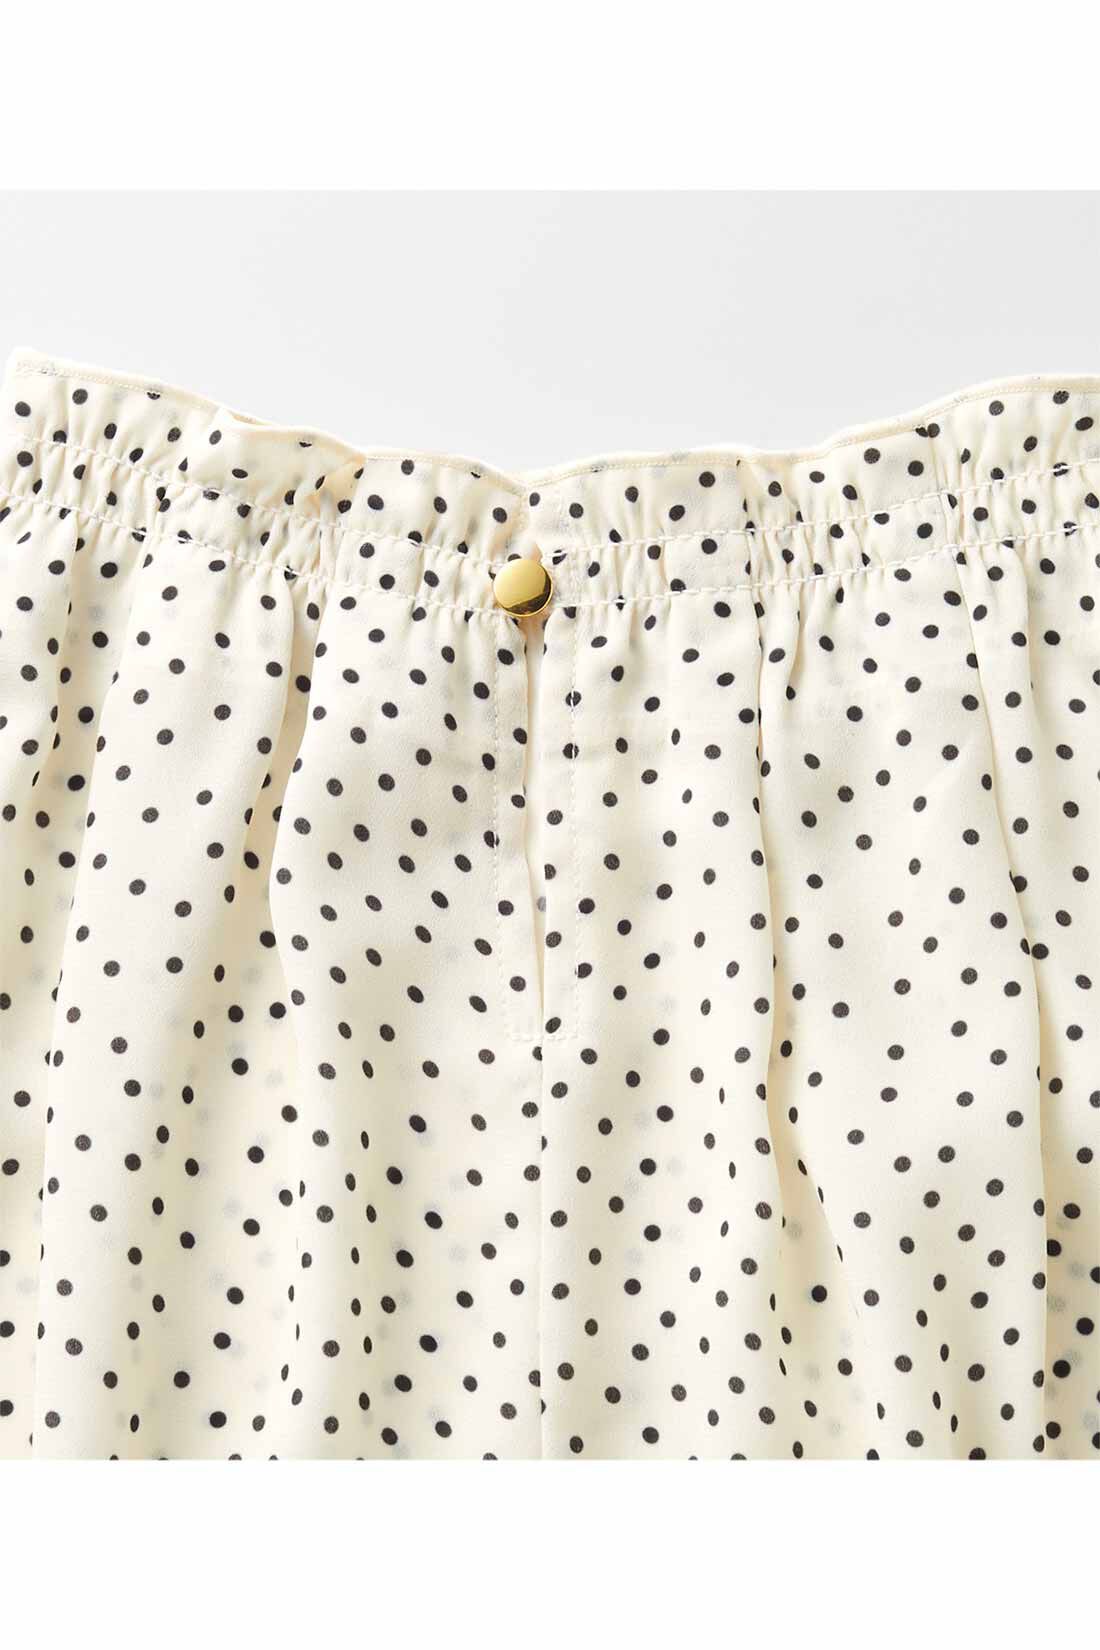 Real Stock|IEDIT[イディット]　着るだけで着映える 落ち感ジョーゼット素材のネックギャザーデザインきれいめプルオーバー〈ドット〉|後ろ衿は、涙開きとゴールドカラーのボタンで、後ろ姿にもさりげない女性らしさをプラス。